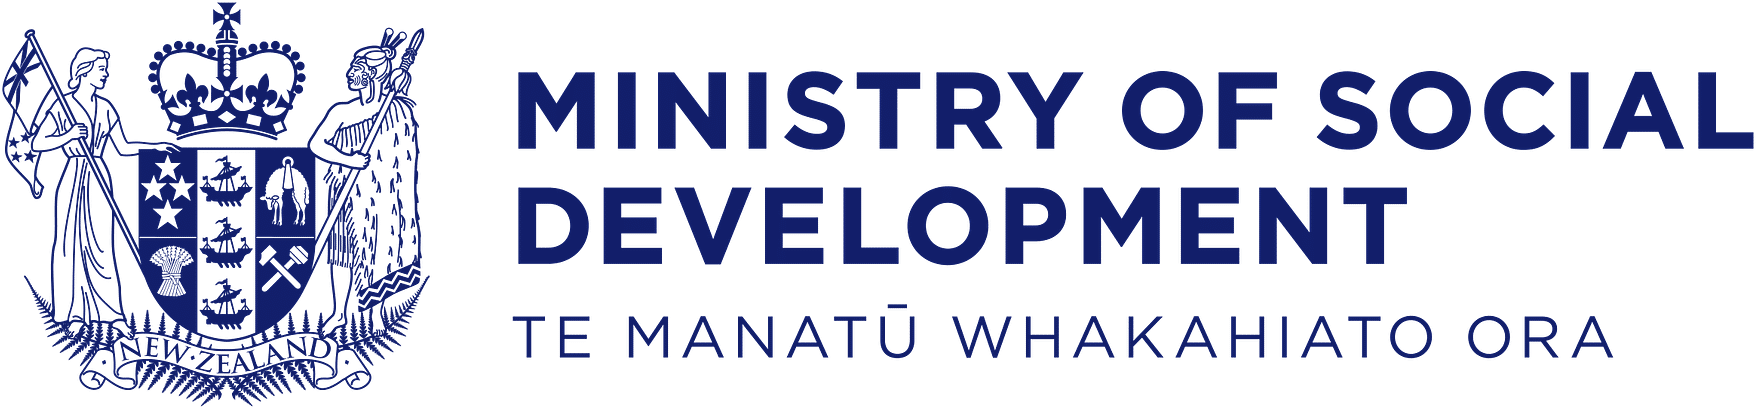 Ministry of Social Development logo